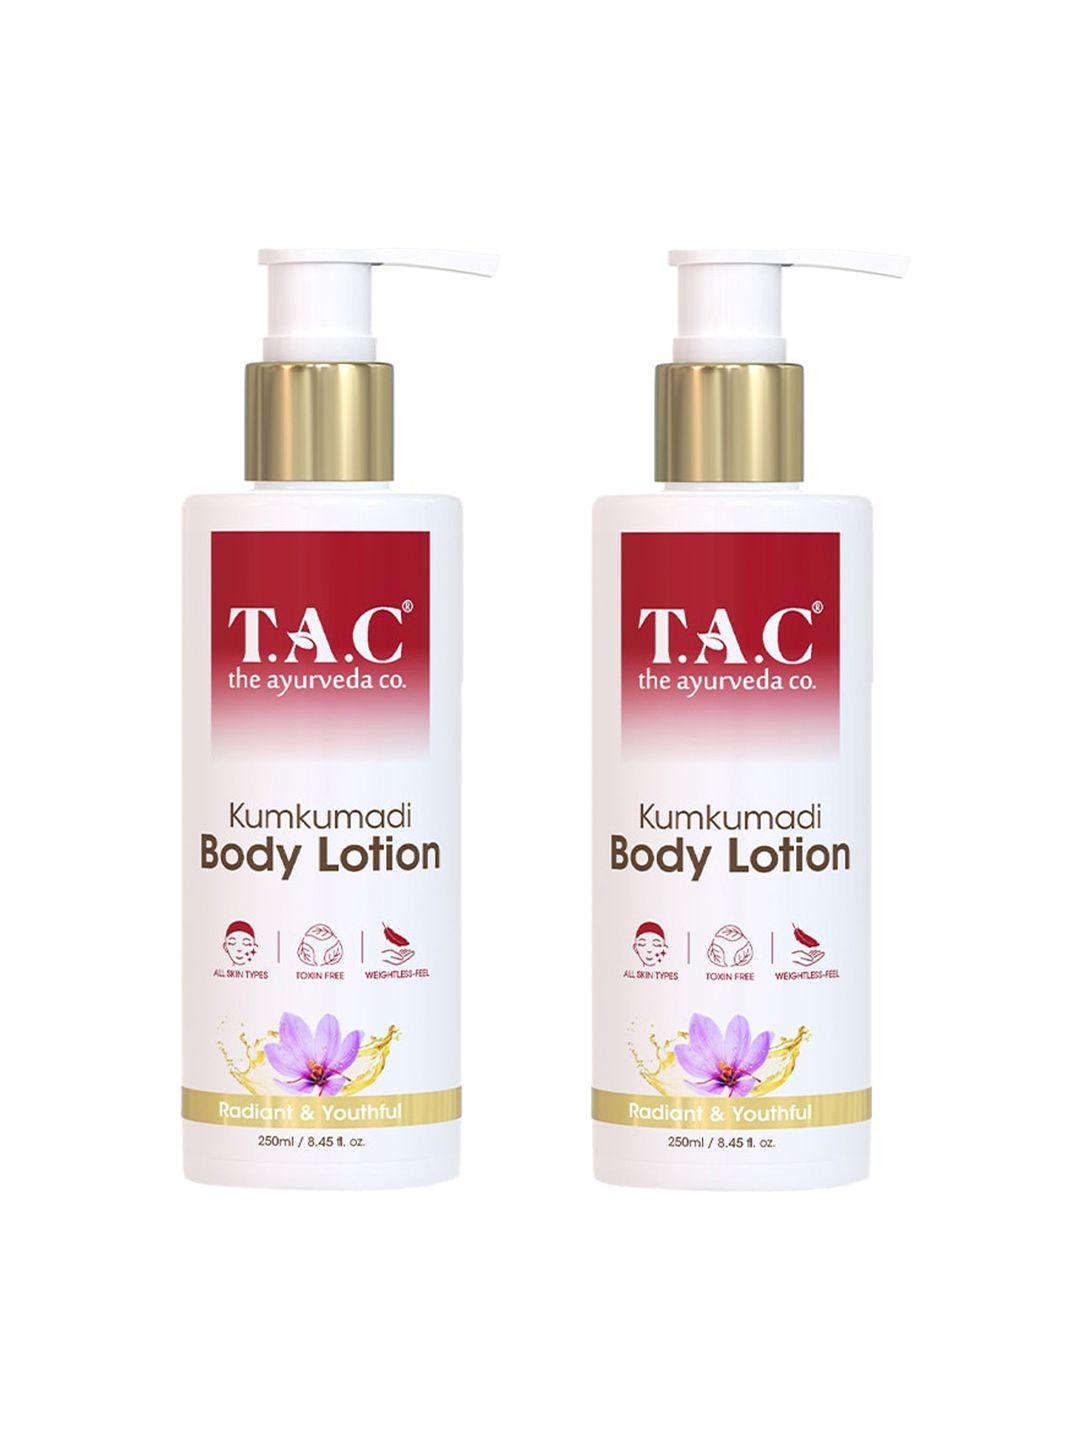 tac - the ayurveda co. set of 2 kumkumadi radiant & youthful body lotion - 250 ml each